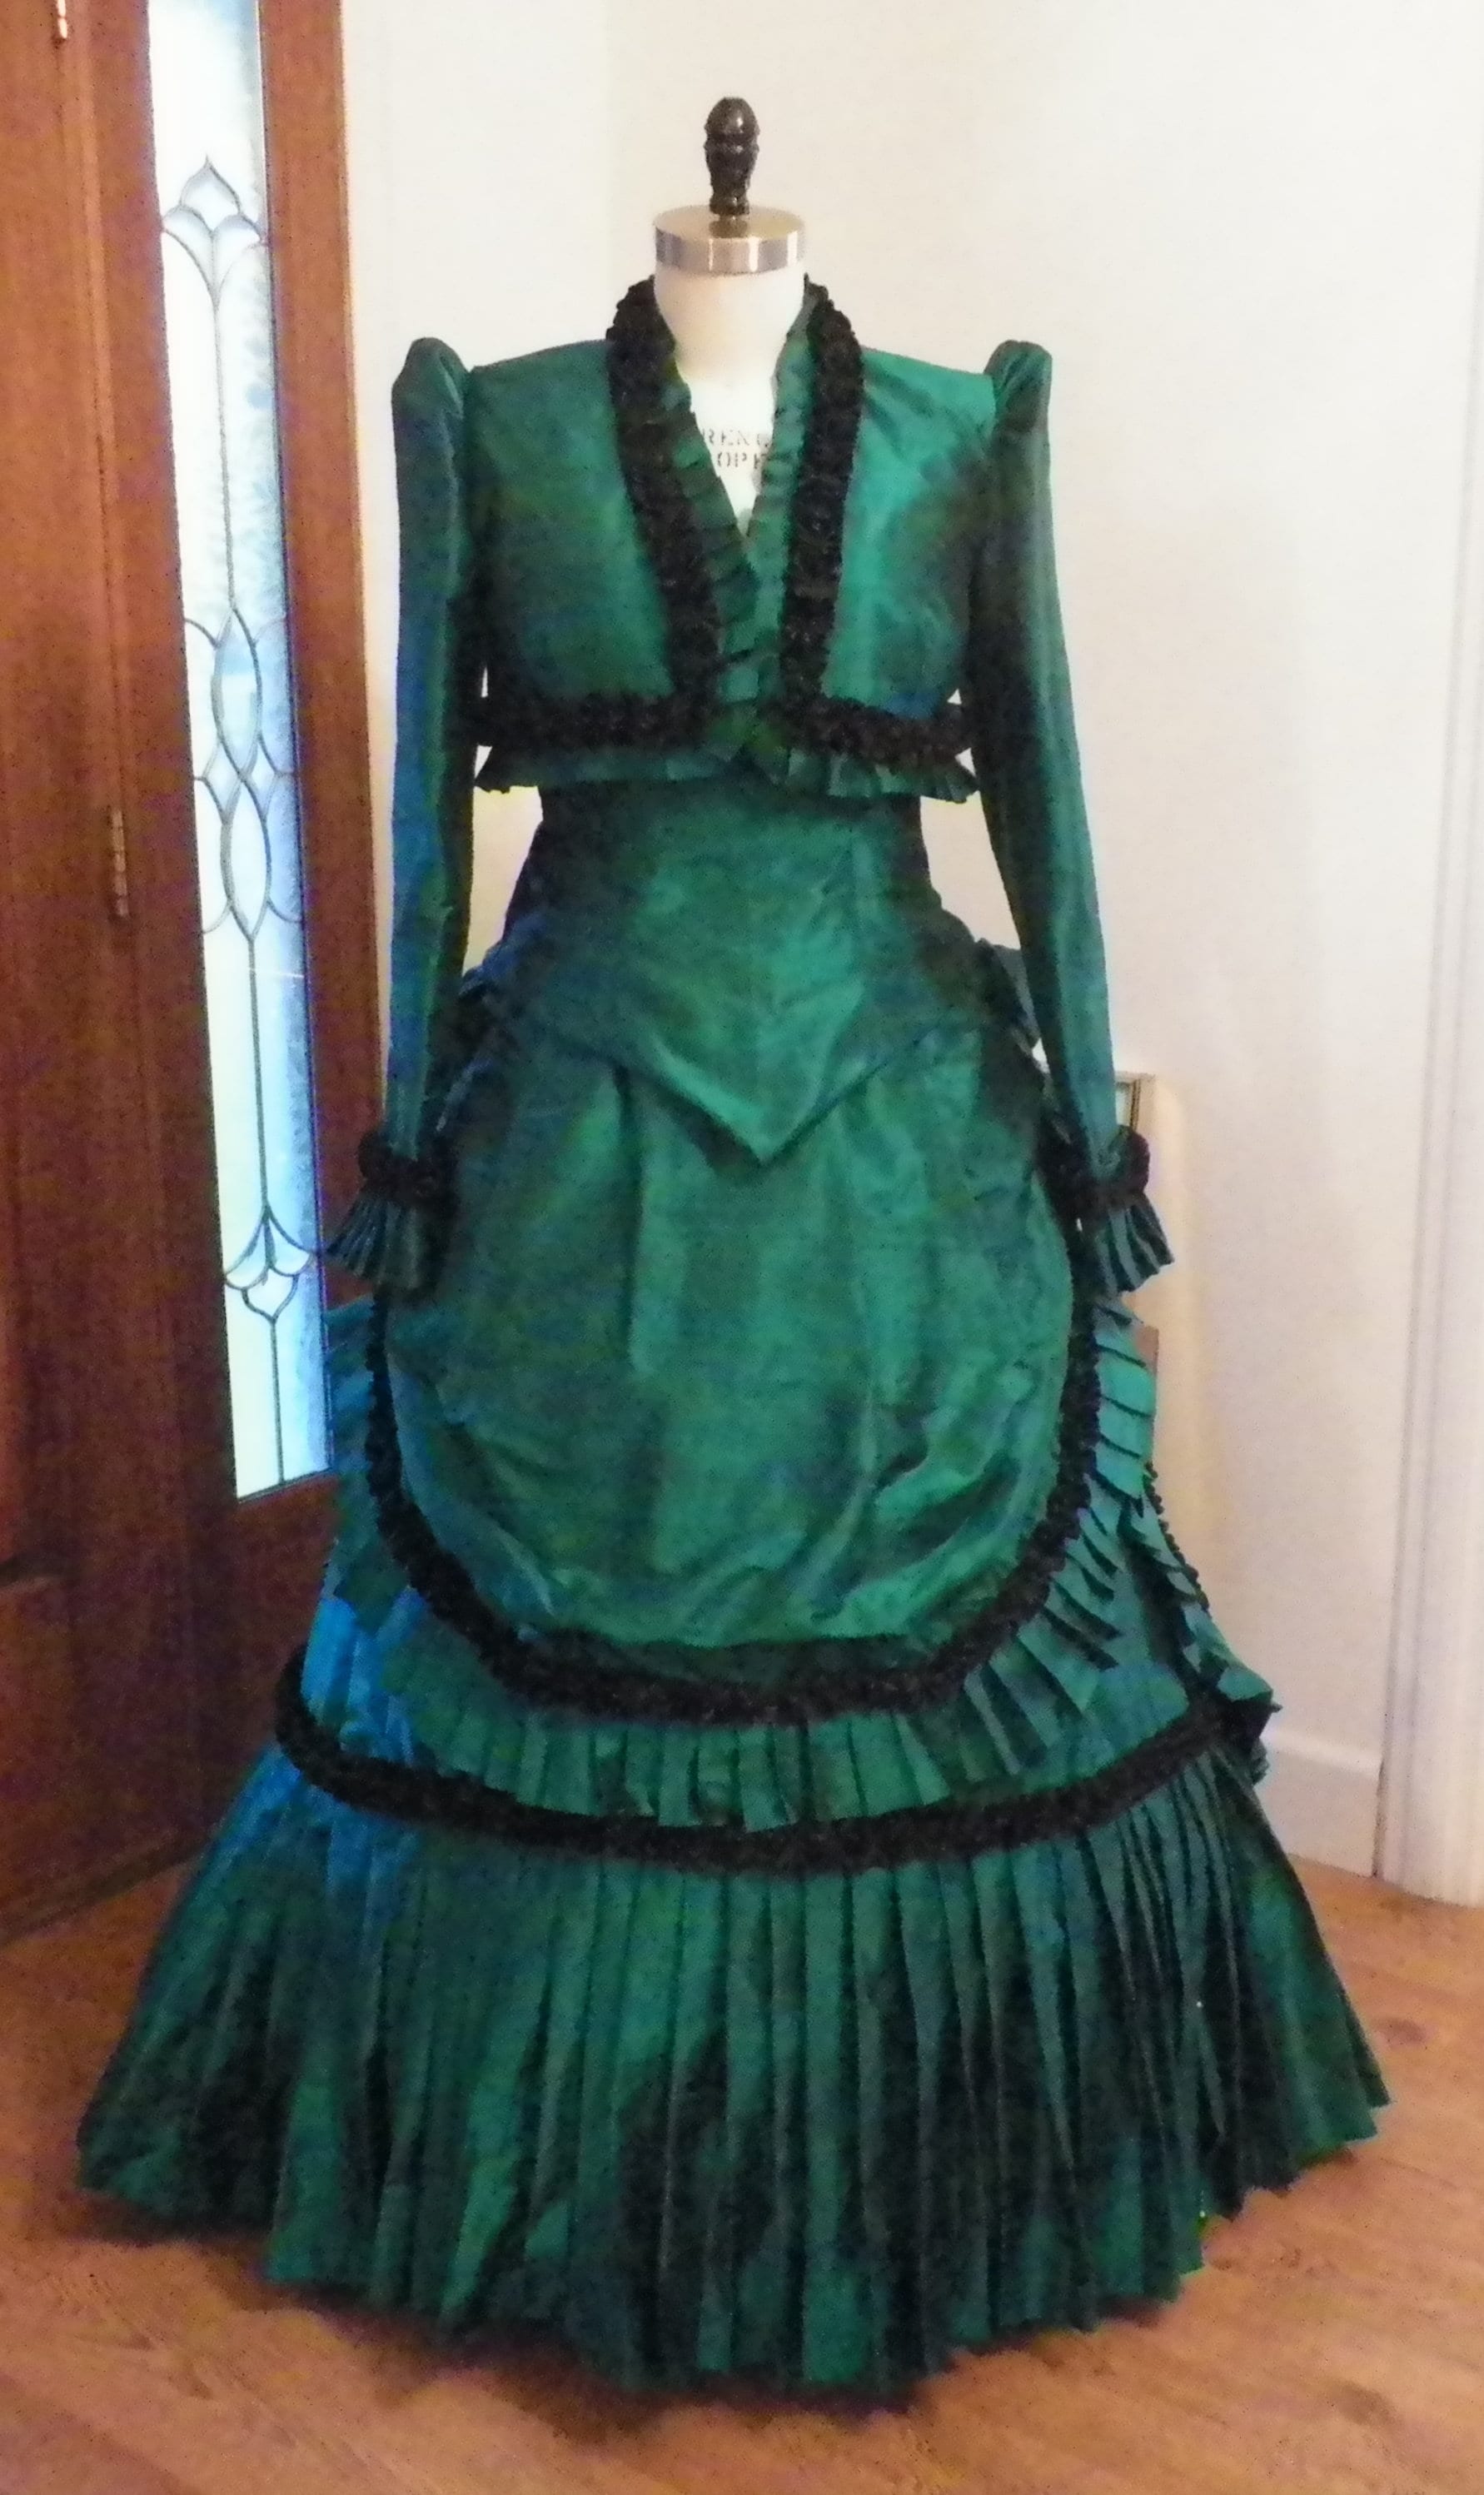 Victorian Bustle Dress, Steampunk Dress, Bustle Dress, Wedding Dress ...